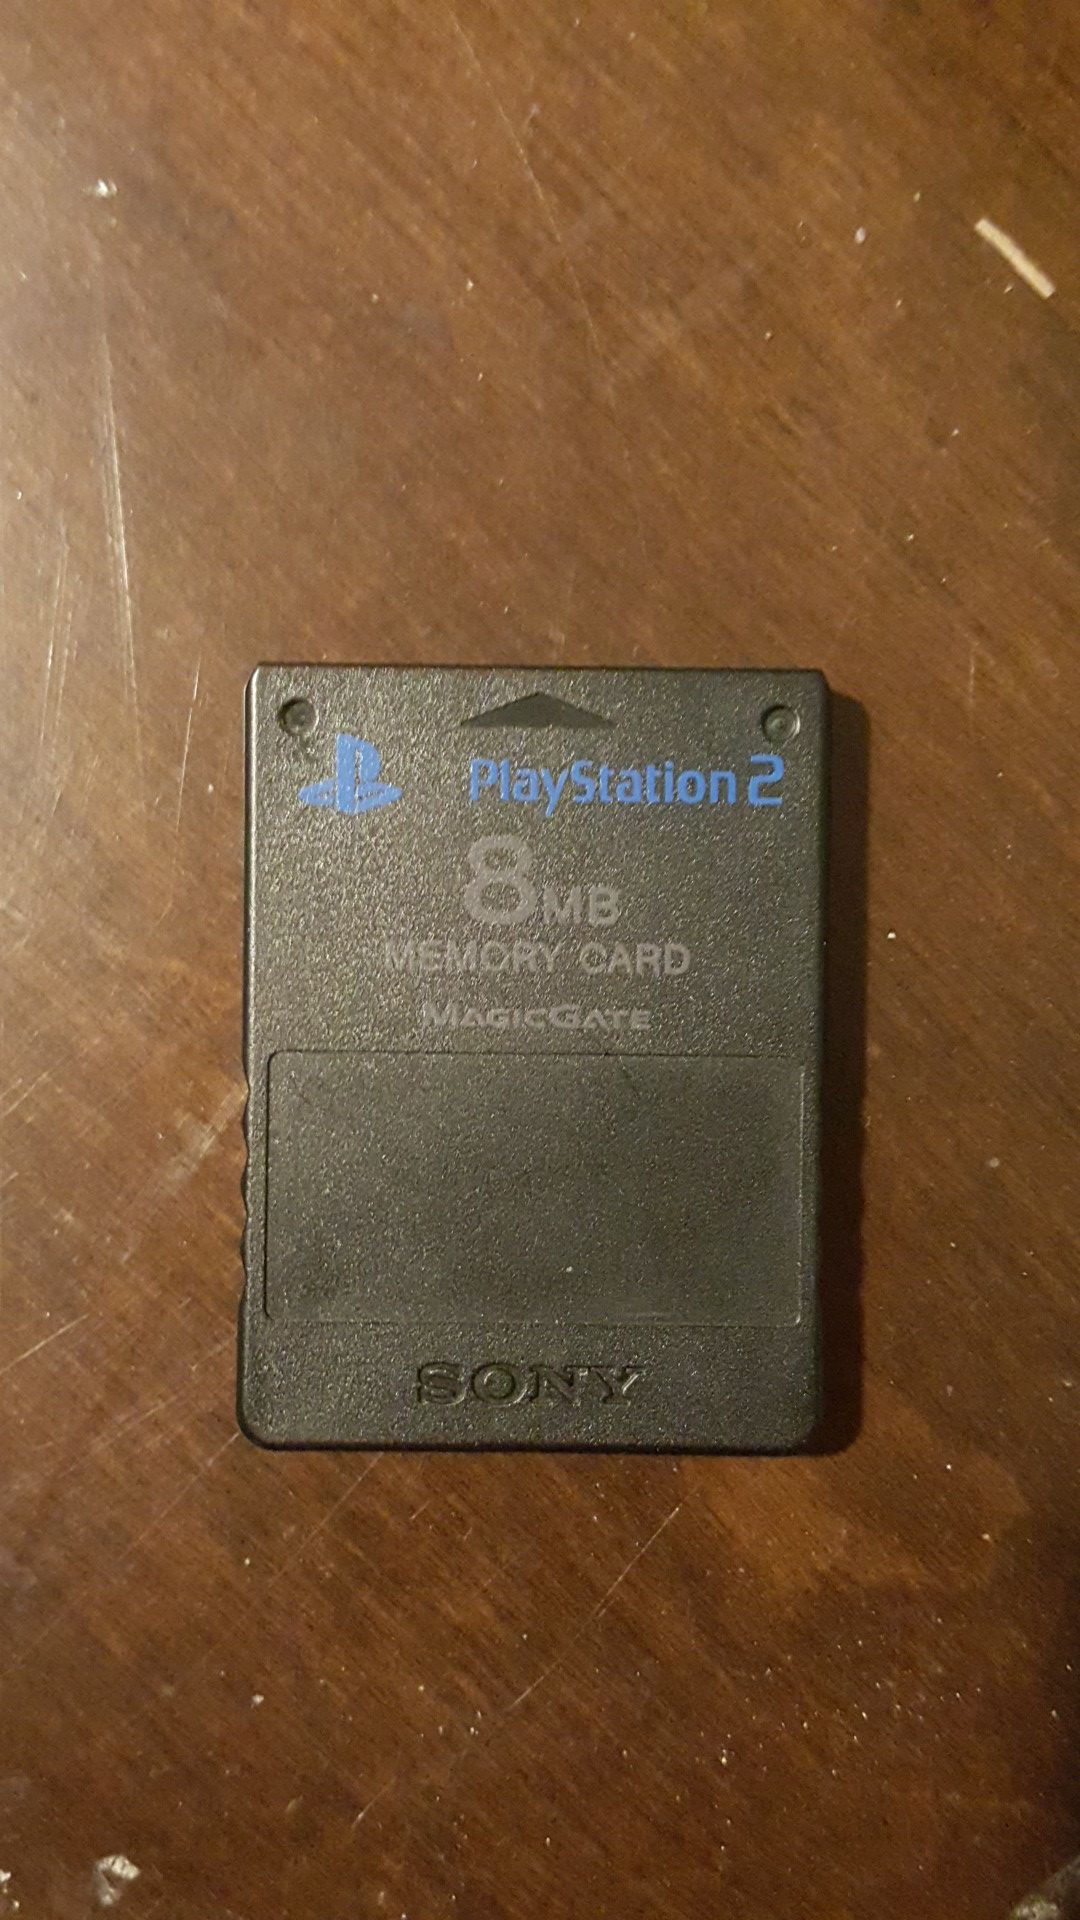 Ps2 memory card